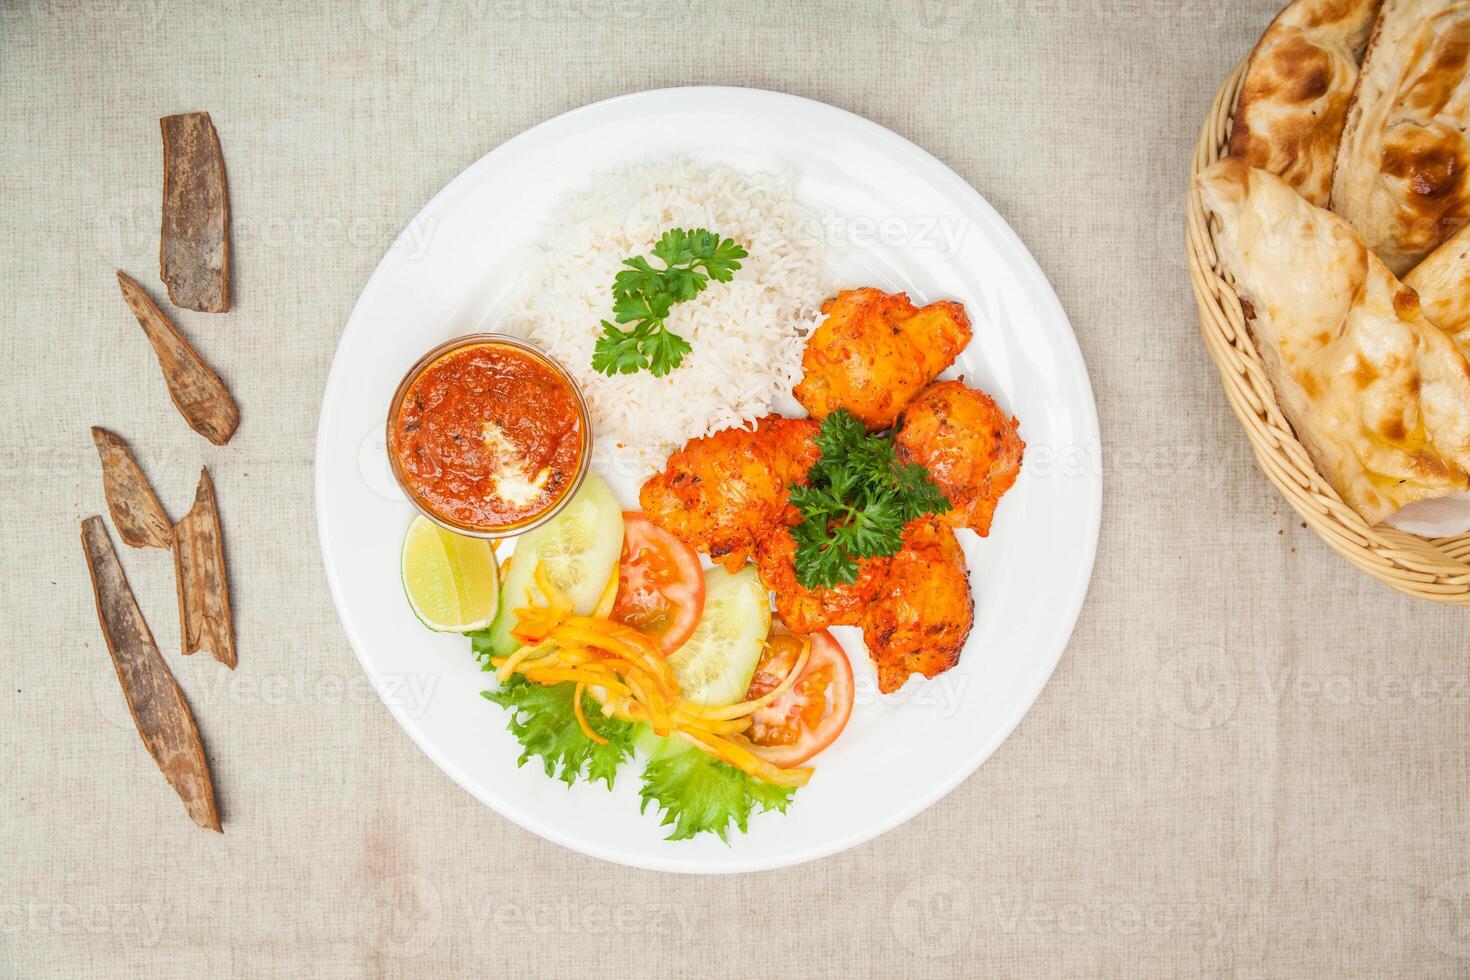 viande de mouton tikka avec plaine riz, salade, chaux, sauce, chutney, Naan et pain servi dans une plat isolé sur table Haut vue de Indien épices nourriture photo